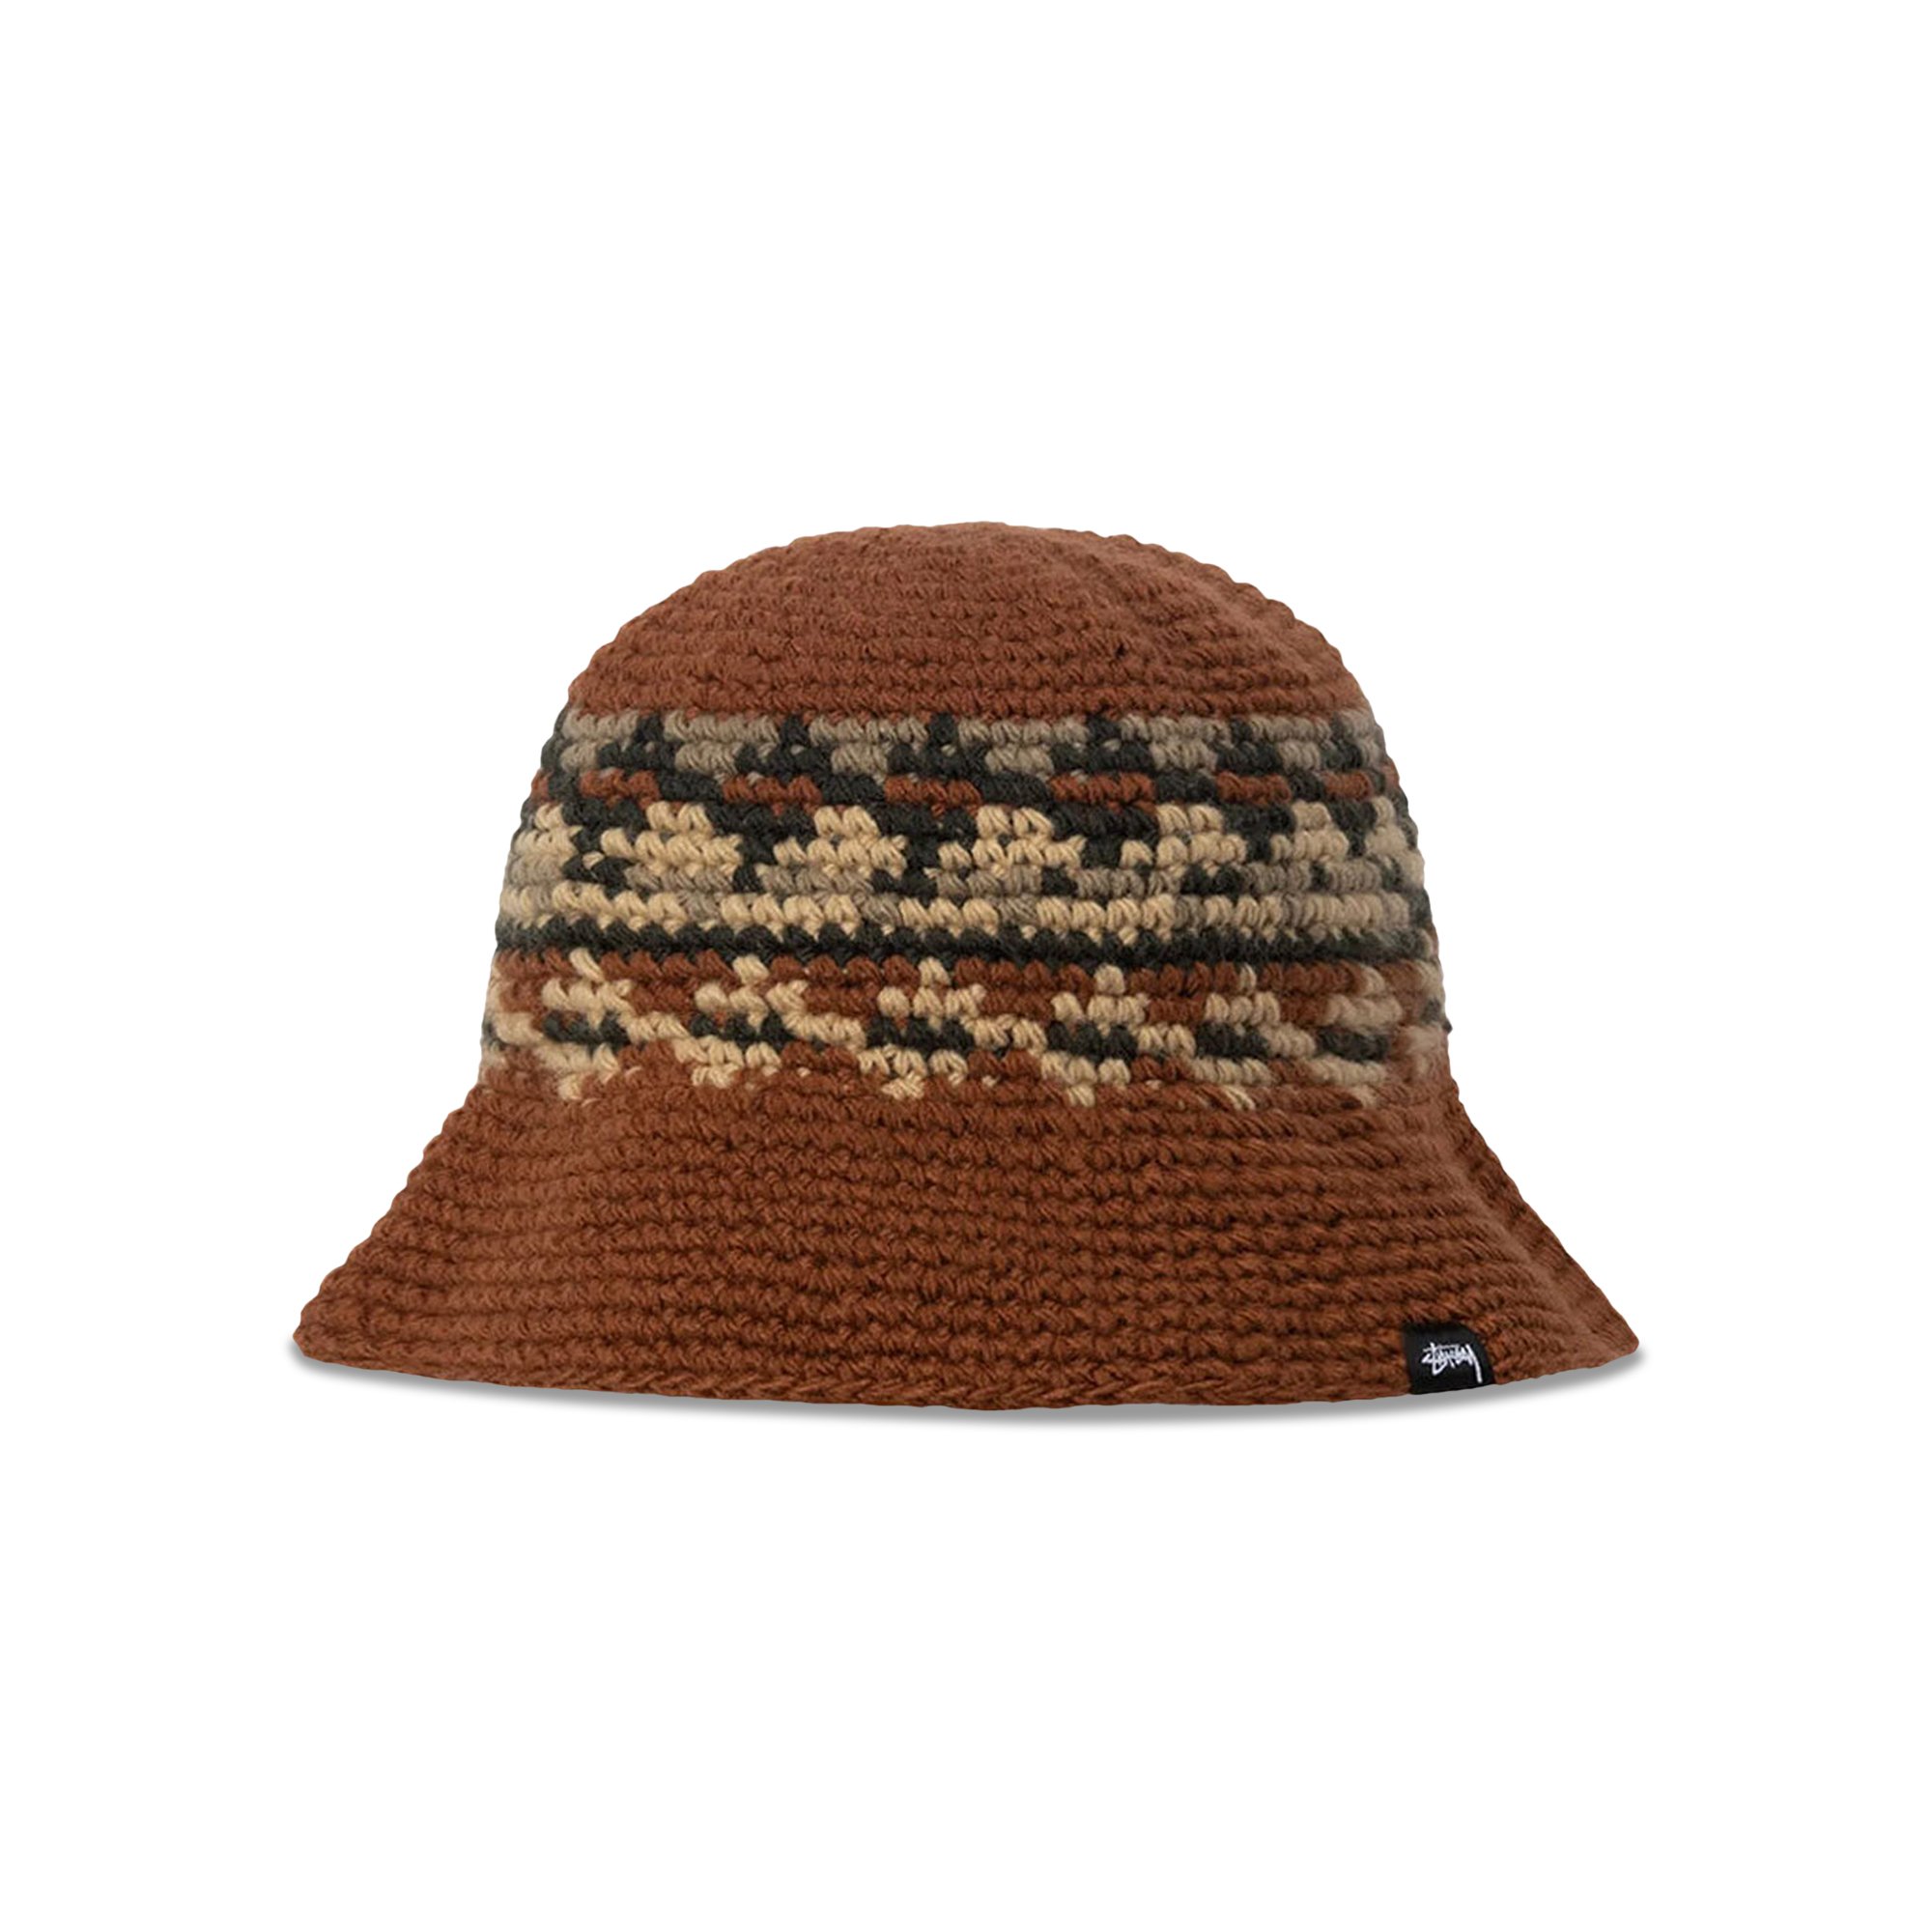 Buy Stussy Fairisle Bucket Hat 'Brown' - 1321140 BROW | GOAT